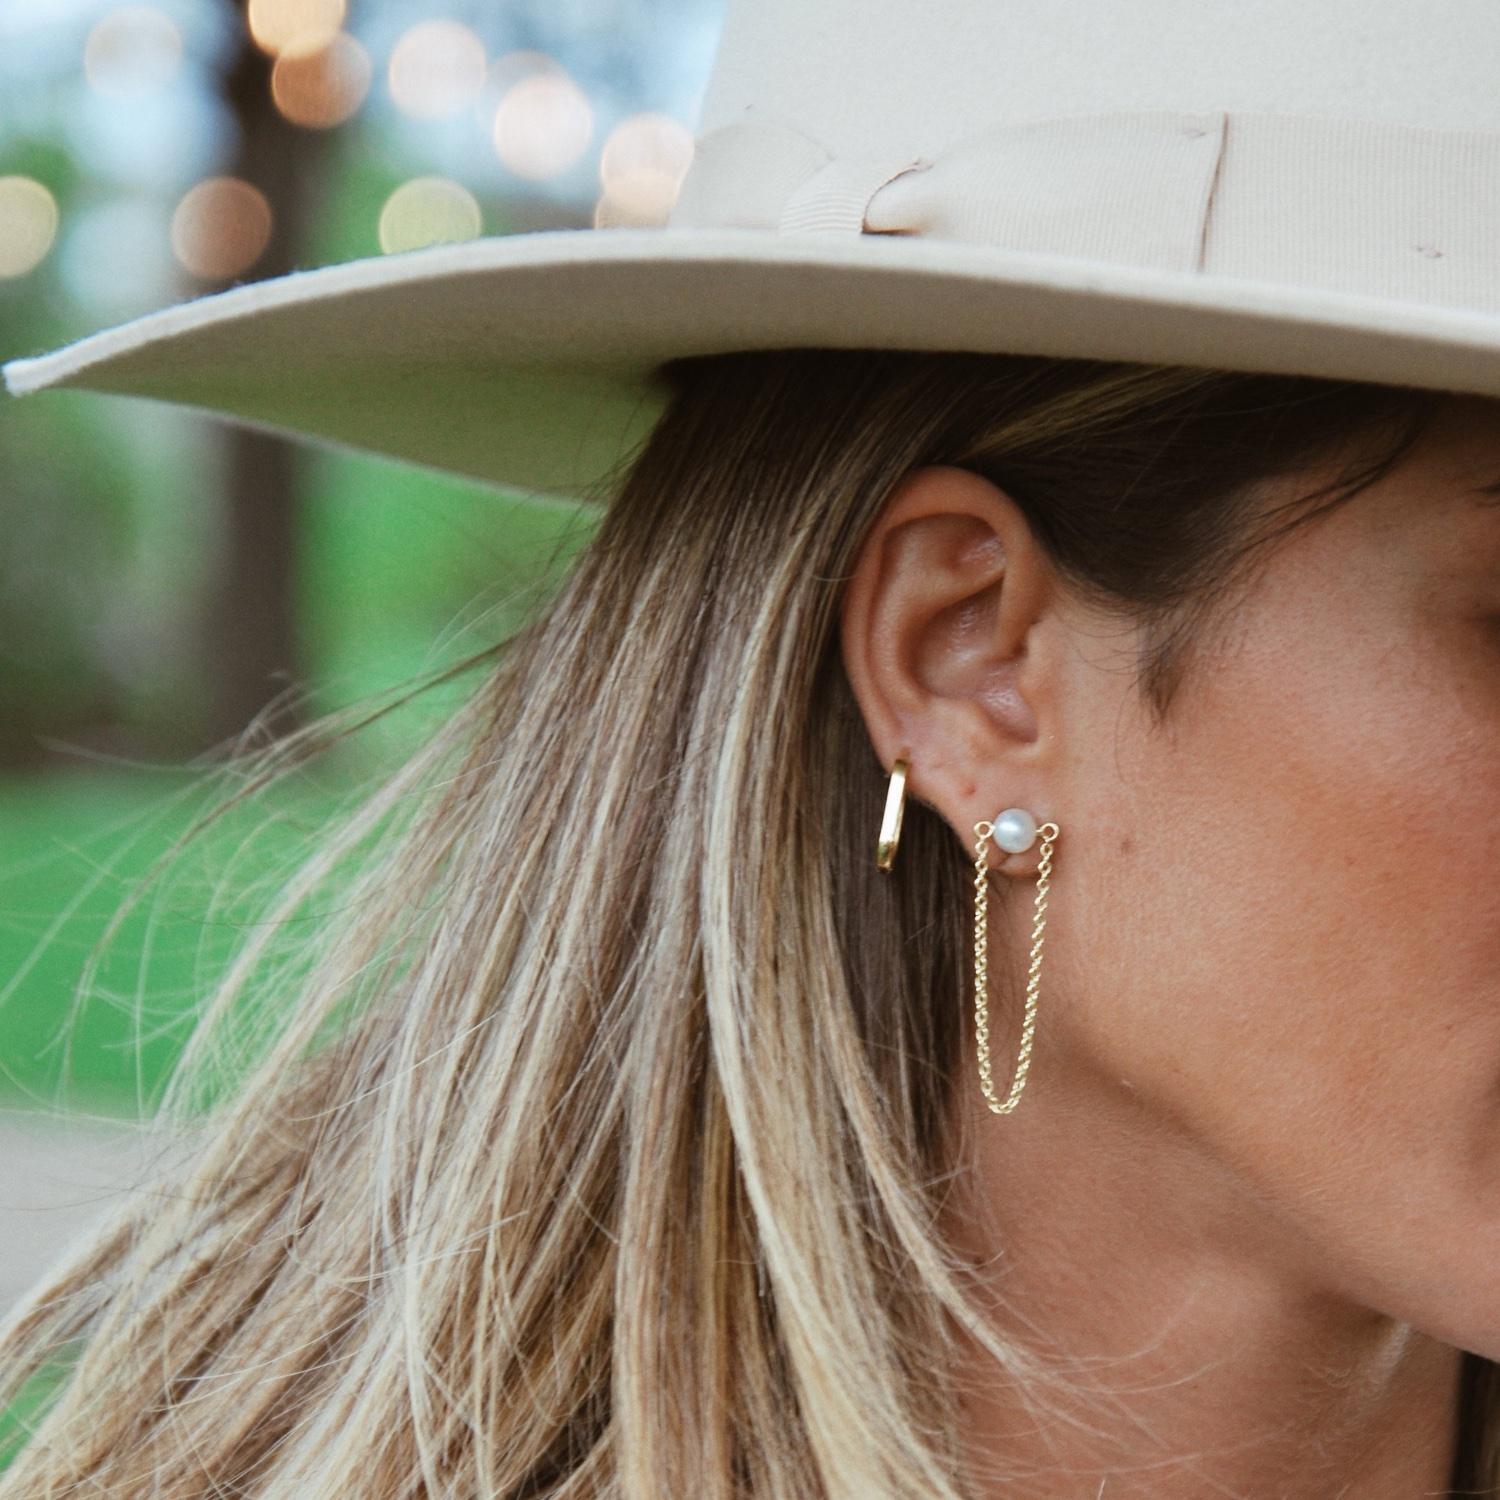 Unsere Veil-Ohrringe sind mit einem Kettenzug versehen, der dem klassischen Perlenstecker eine frische und moderne Note verleiht. 

Diese Ohrringe können auch mit unseren Infinity-Ohrringen kombiniert werden, um Ihren Alltagslook aufzupeppen. Wir